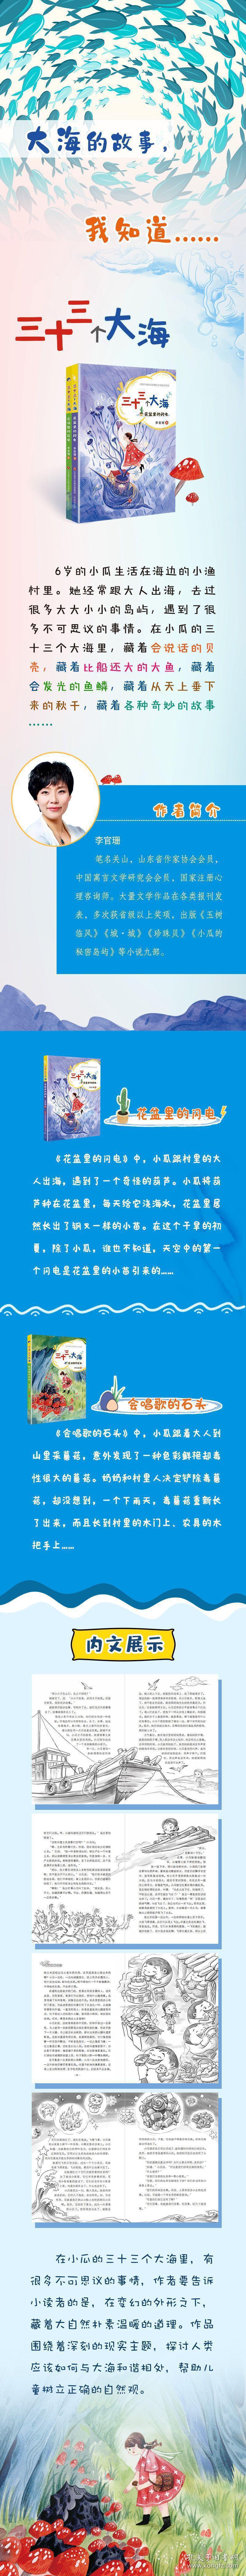 三十三个大海：会唱歌的石头 普通图书/童书 李官珊 济南出版社 9787548850892